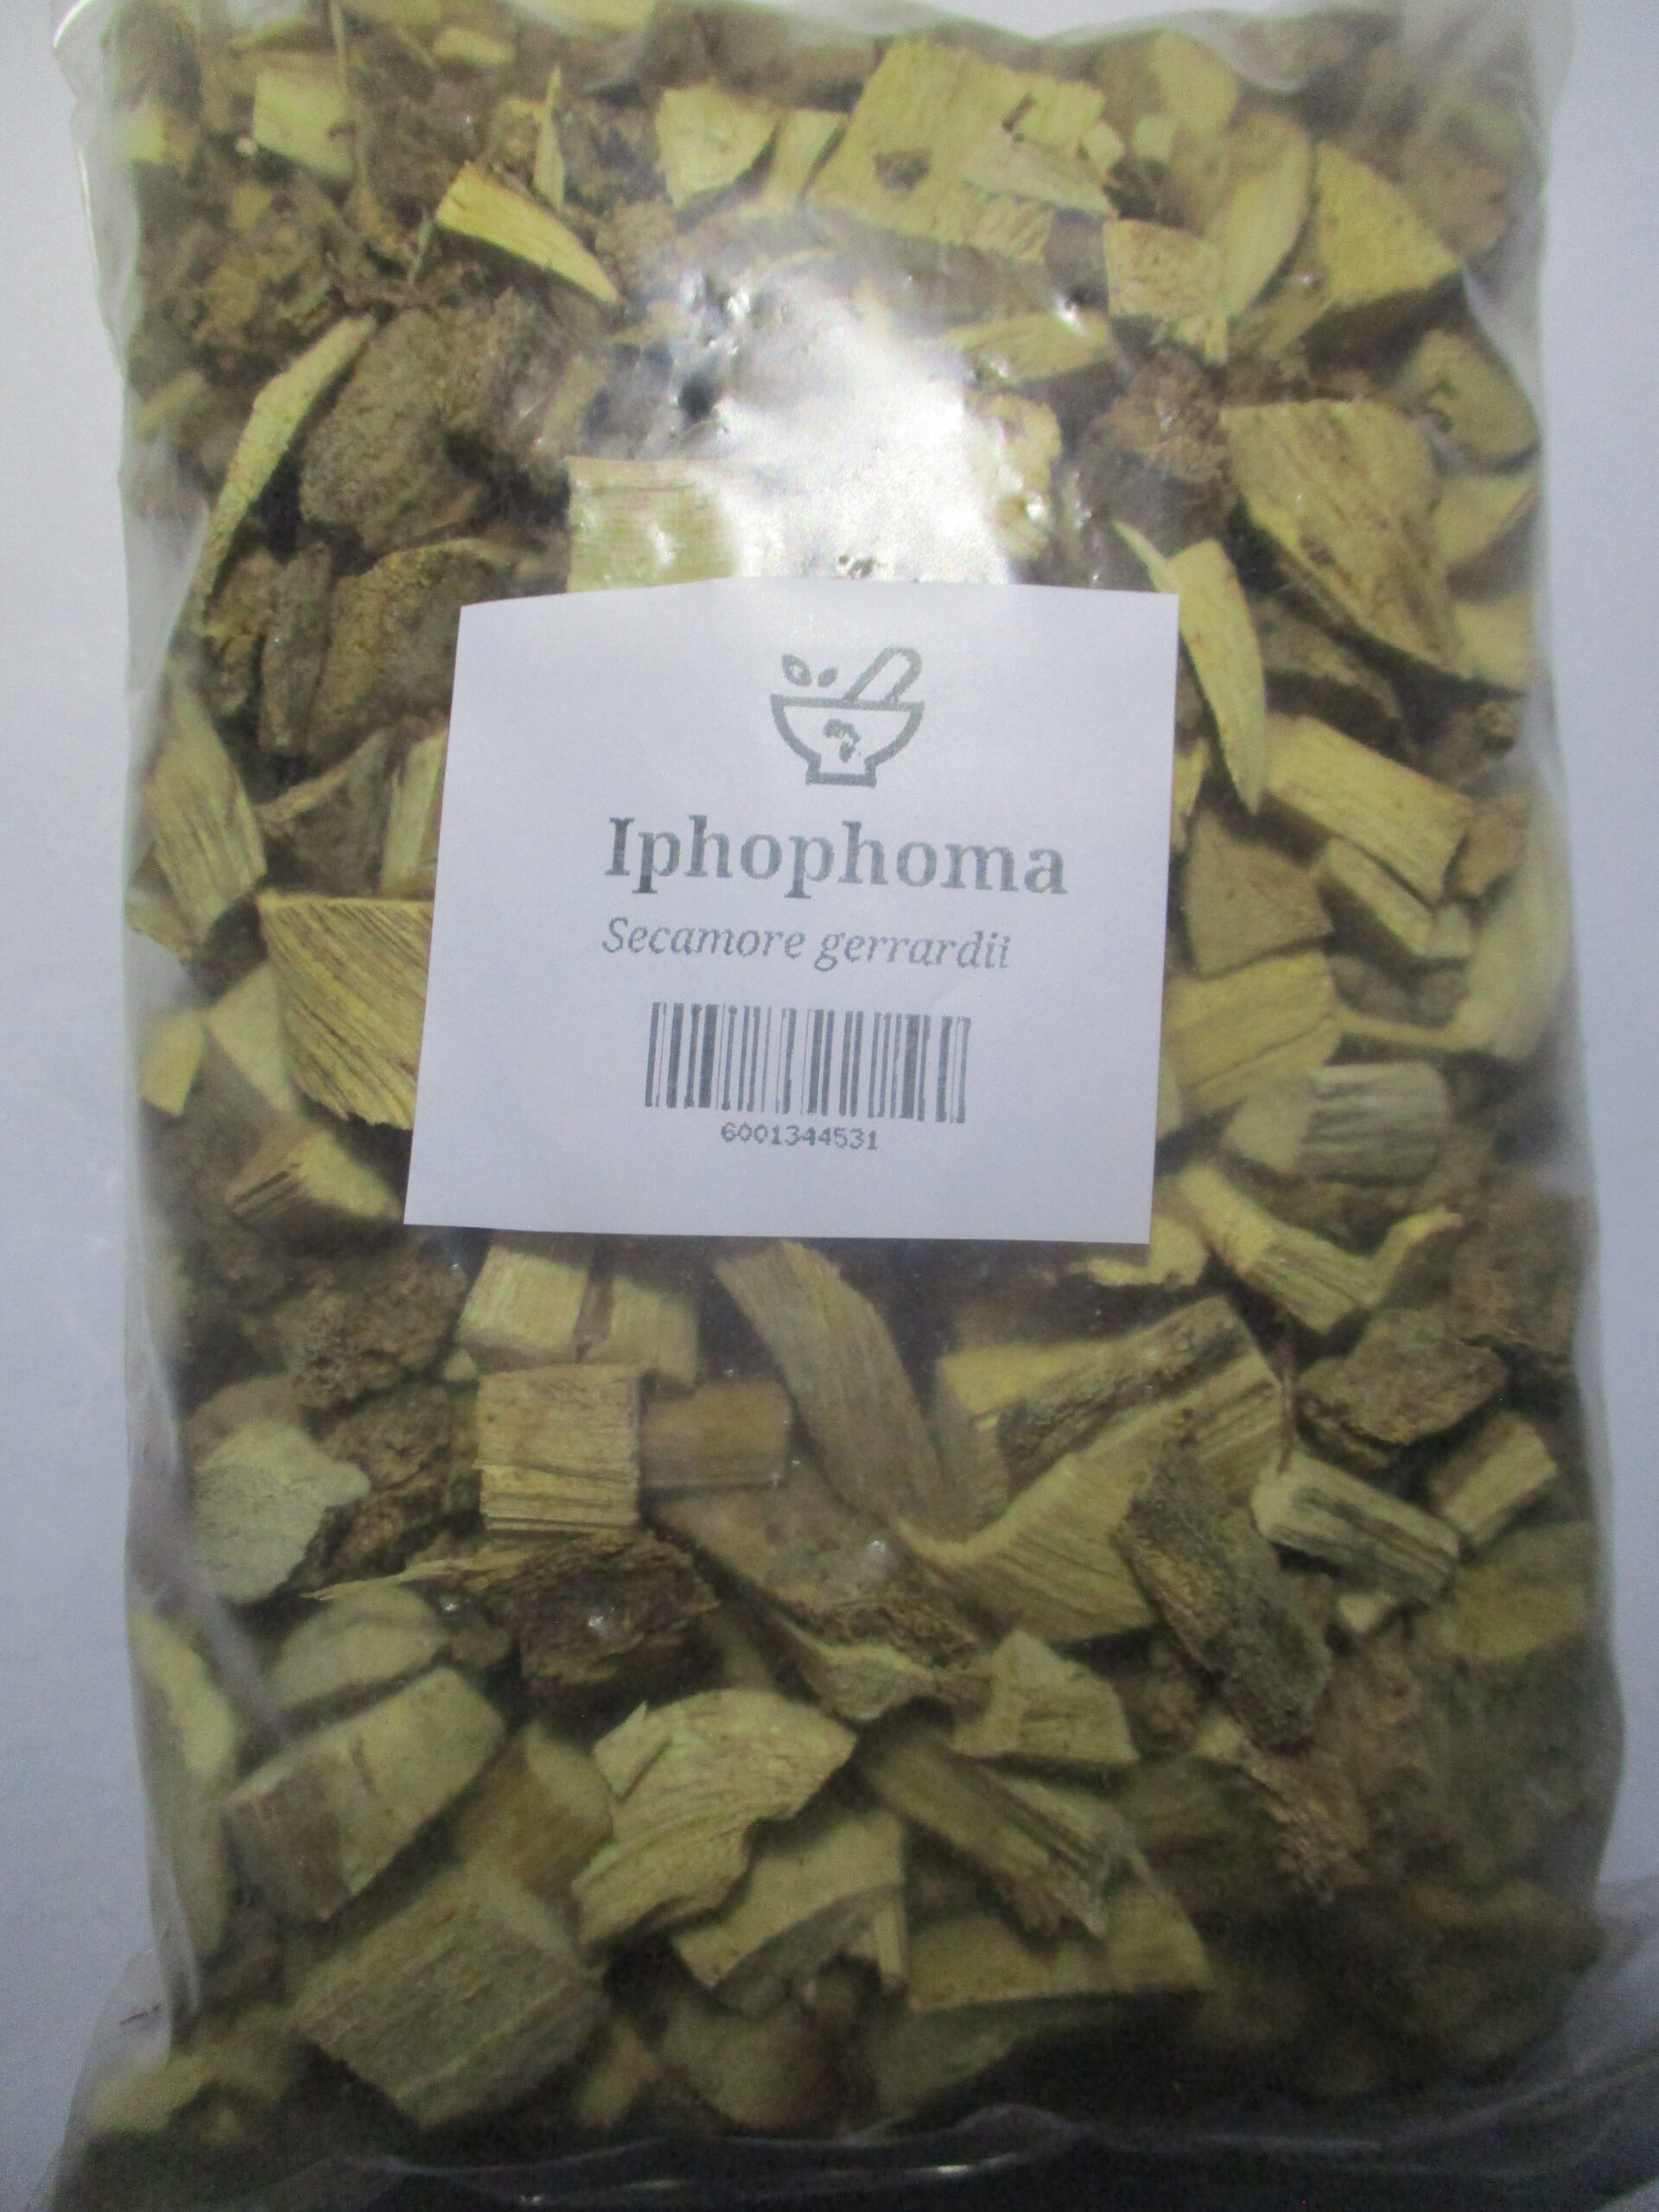 Iphophoma